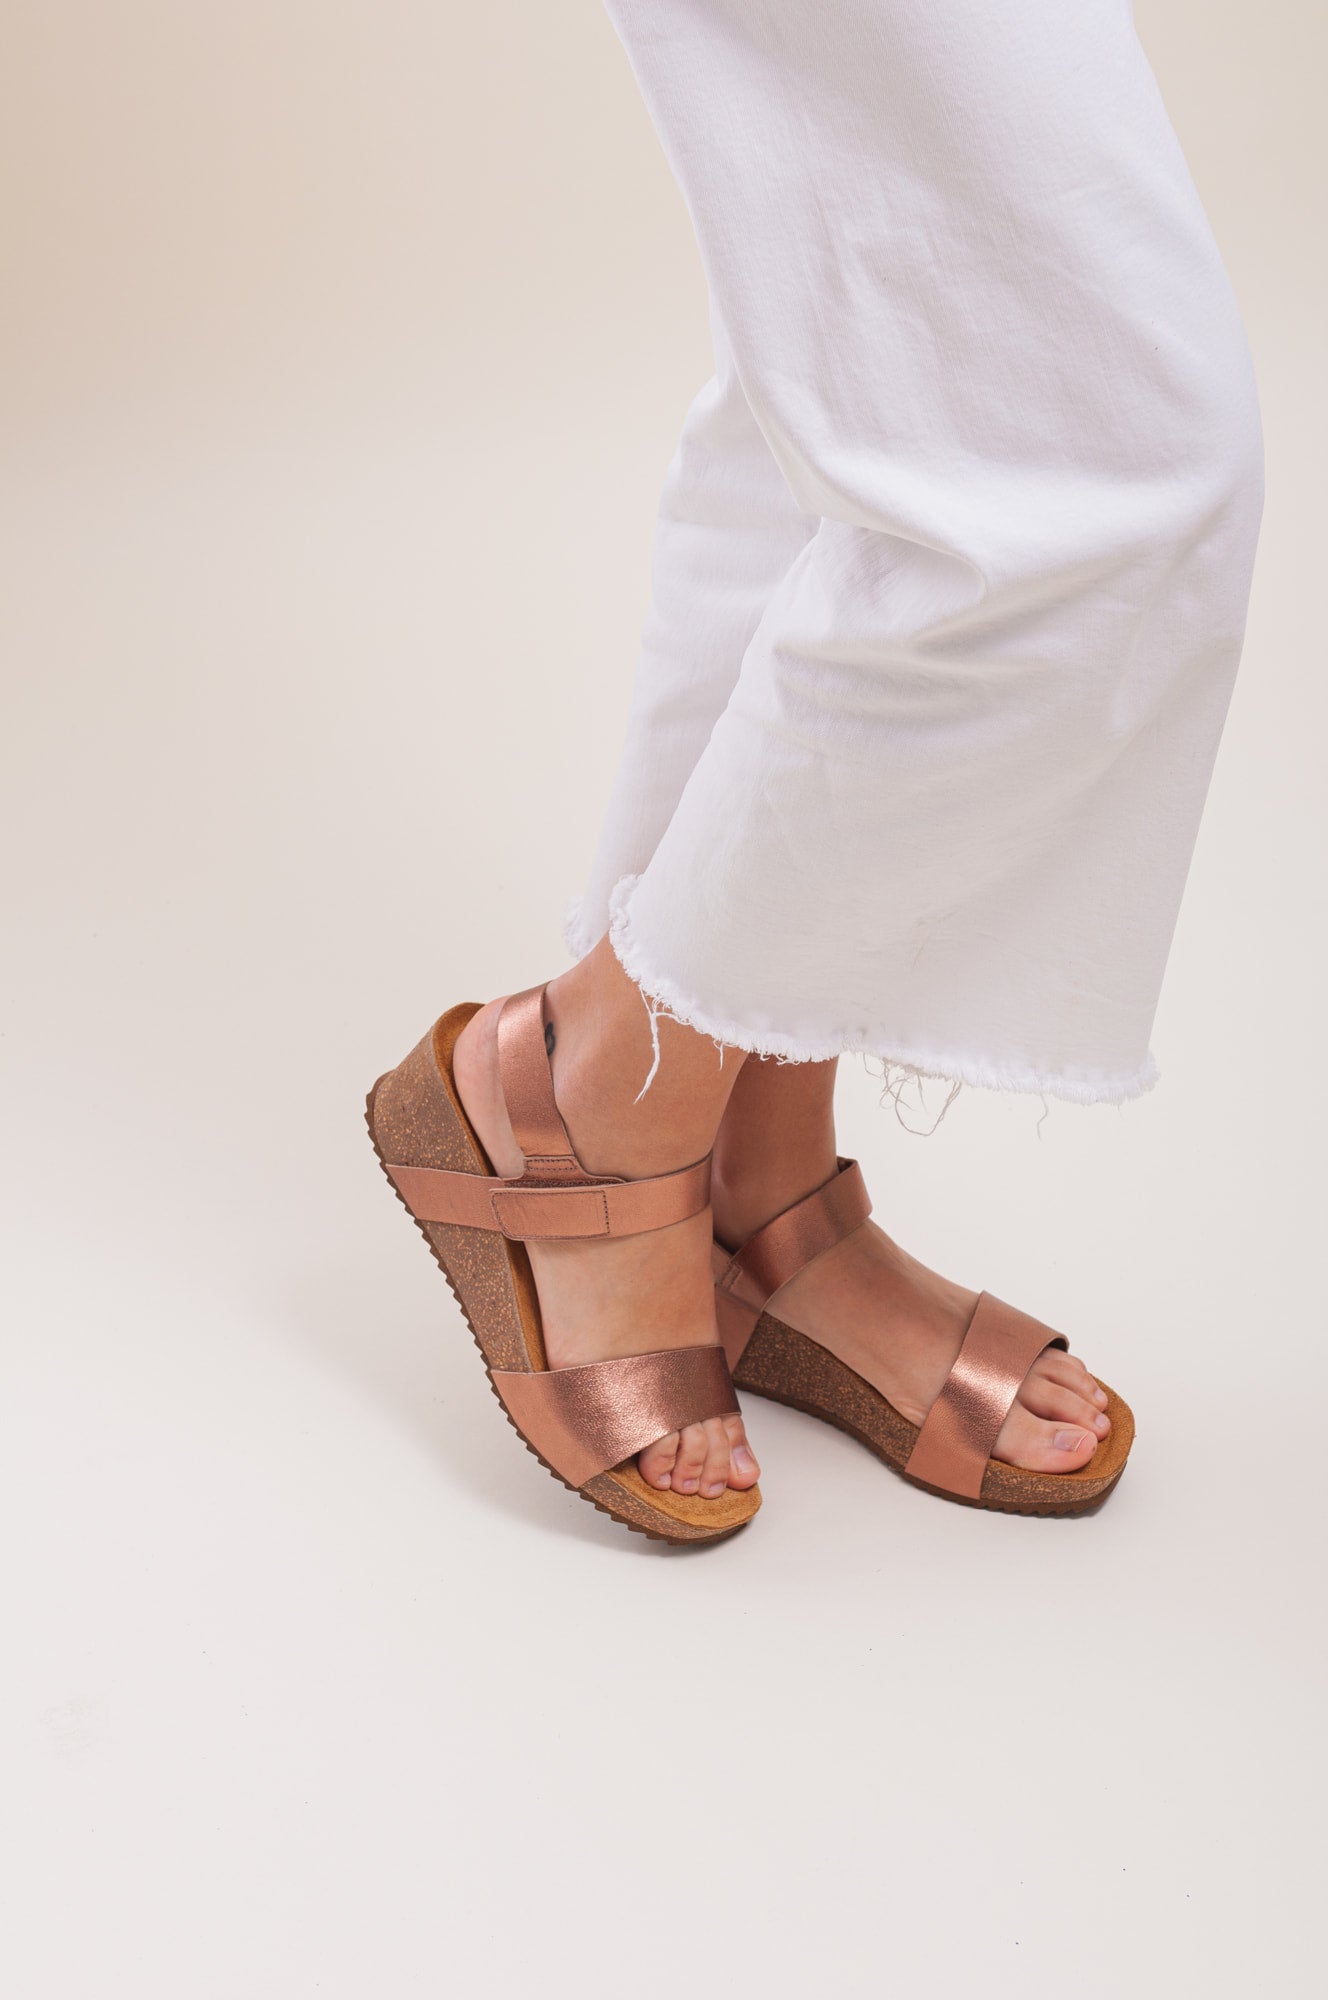 Sandalias de plataforma para mujer. Zapatos de cuña ligeros y cómodos.